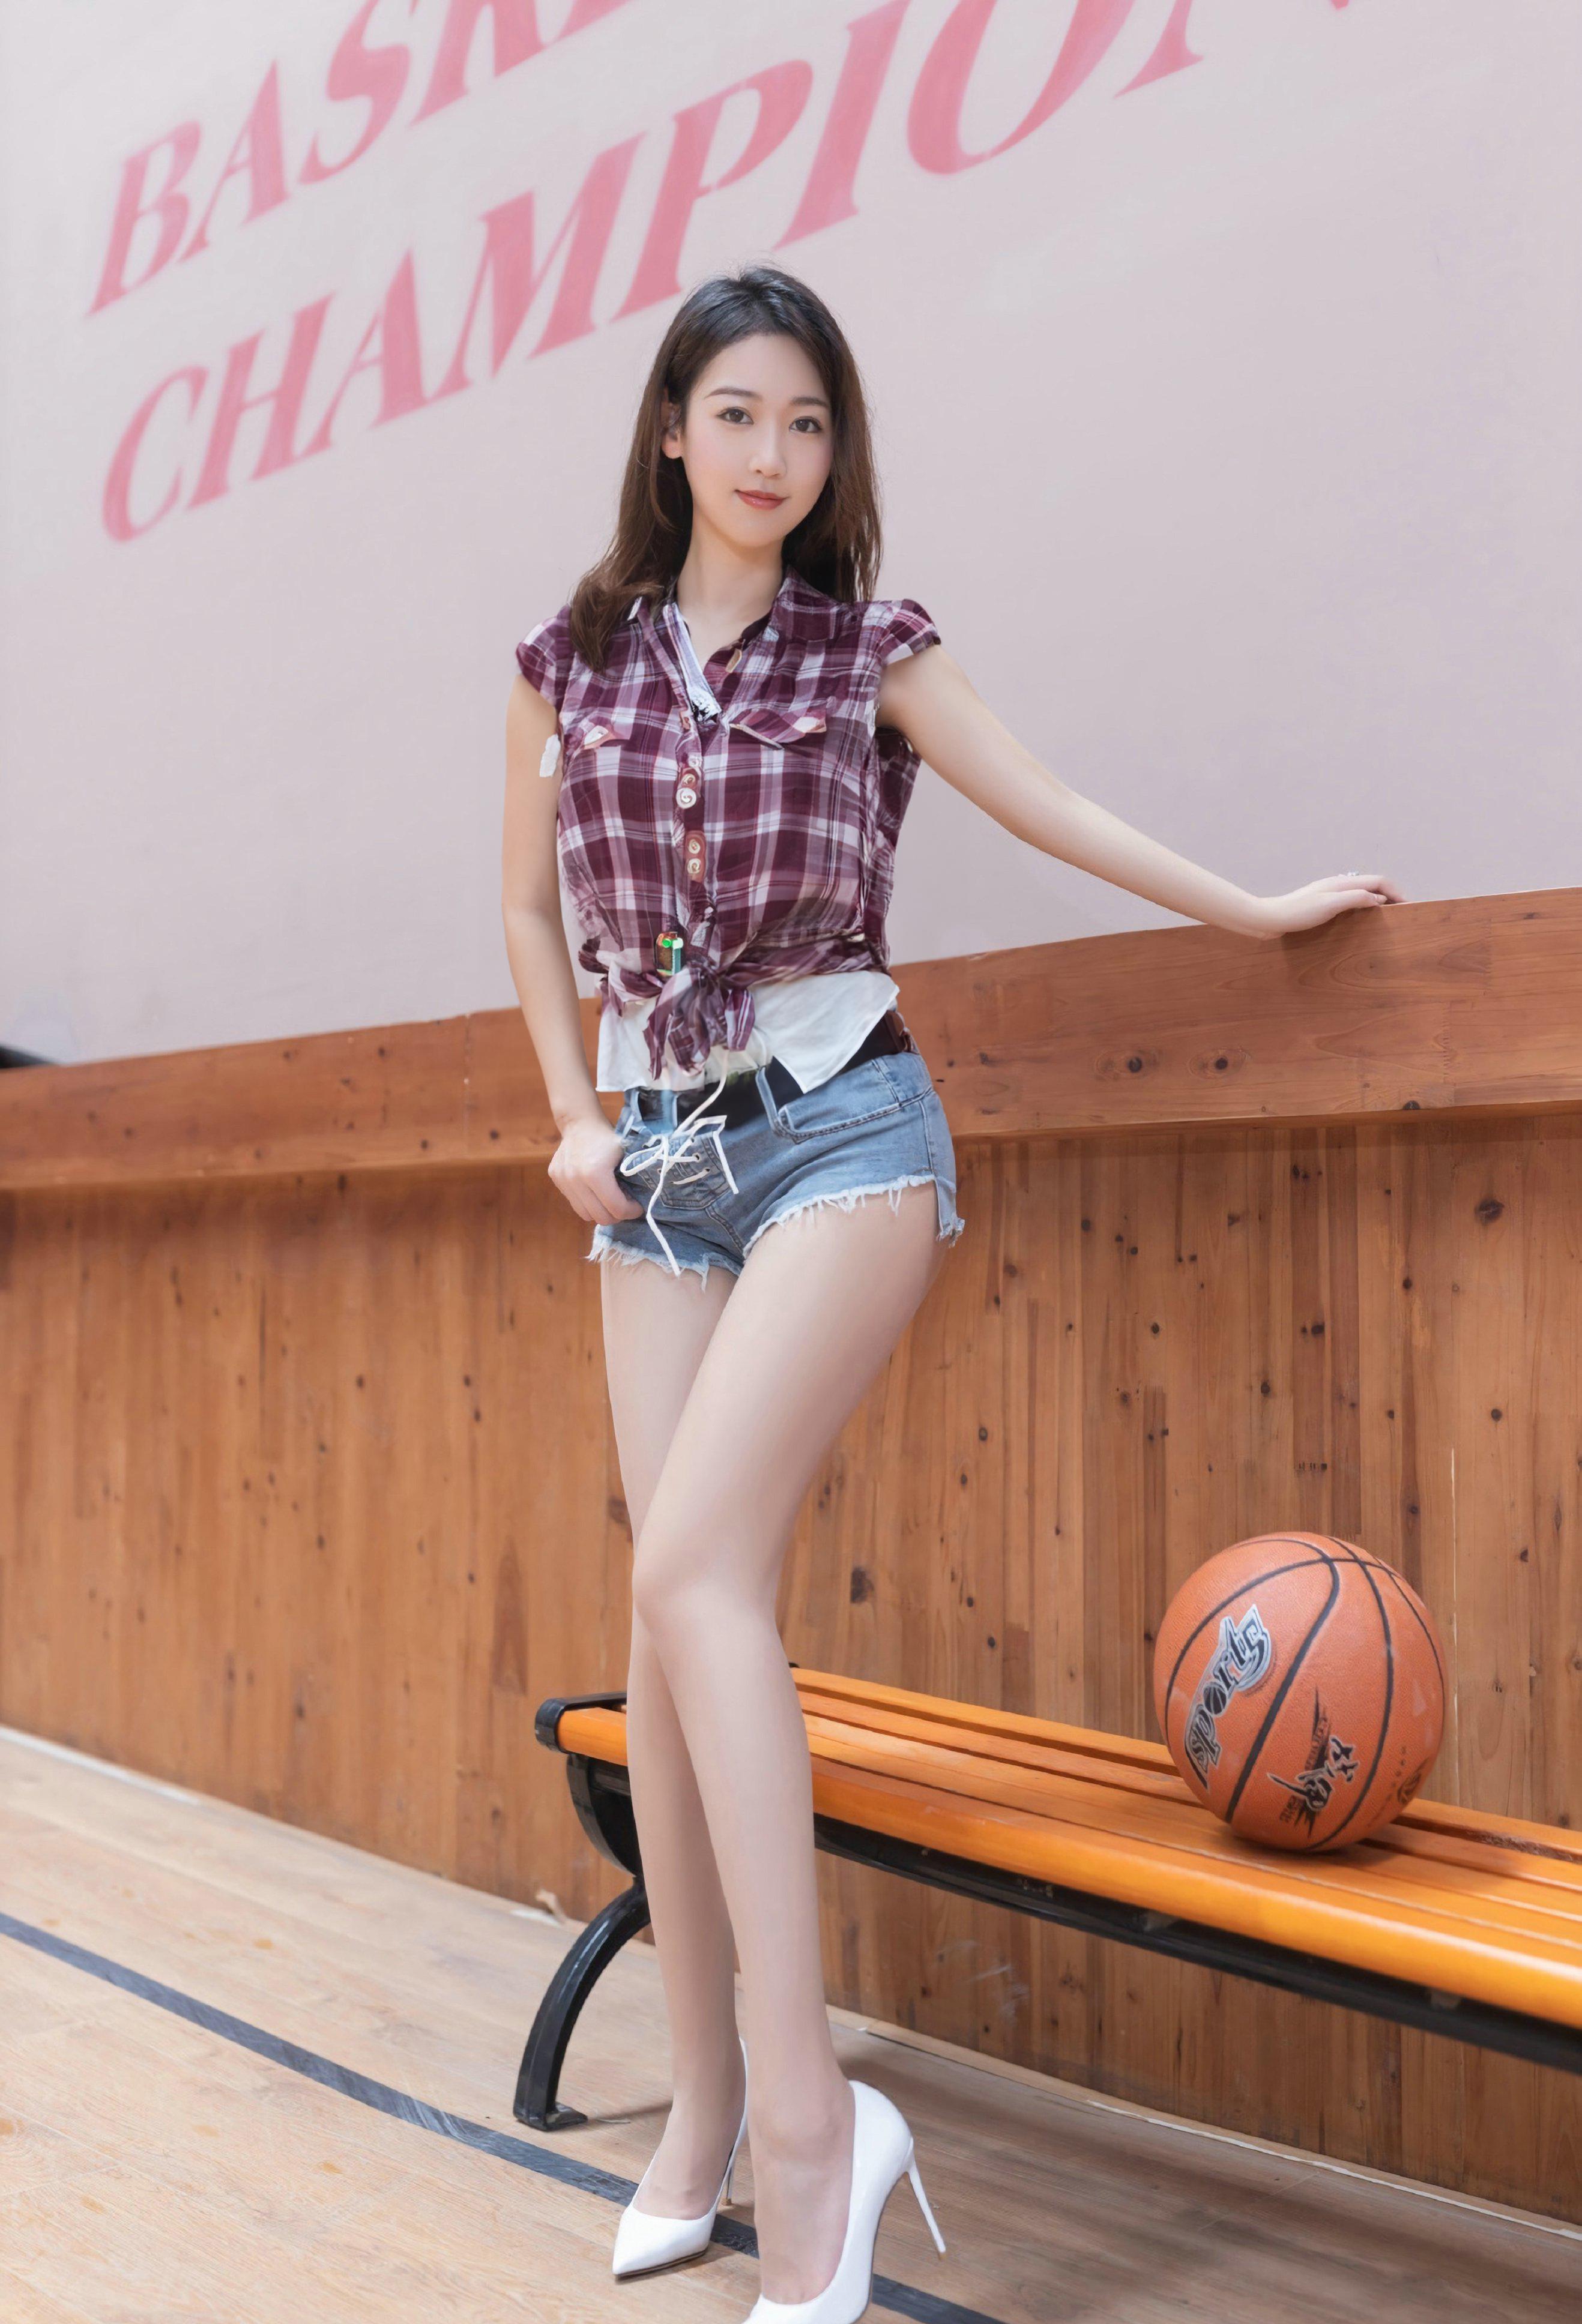 唐安琪——篮球宝贝「摄影评测与赏析」(17)